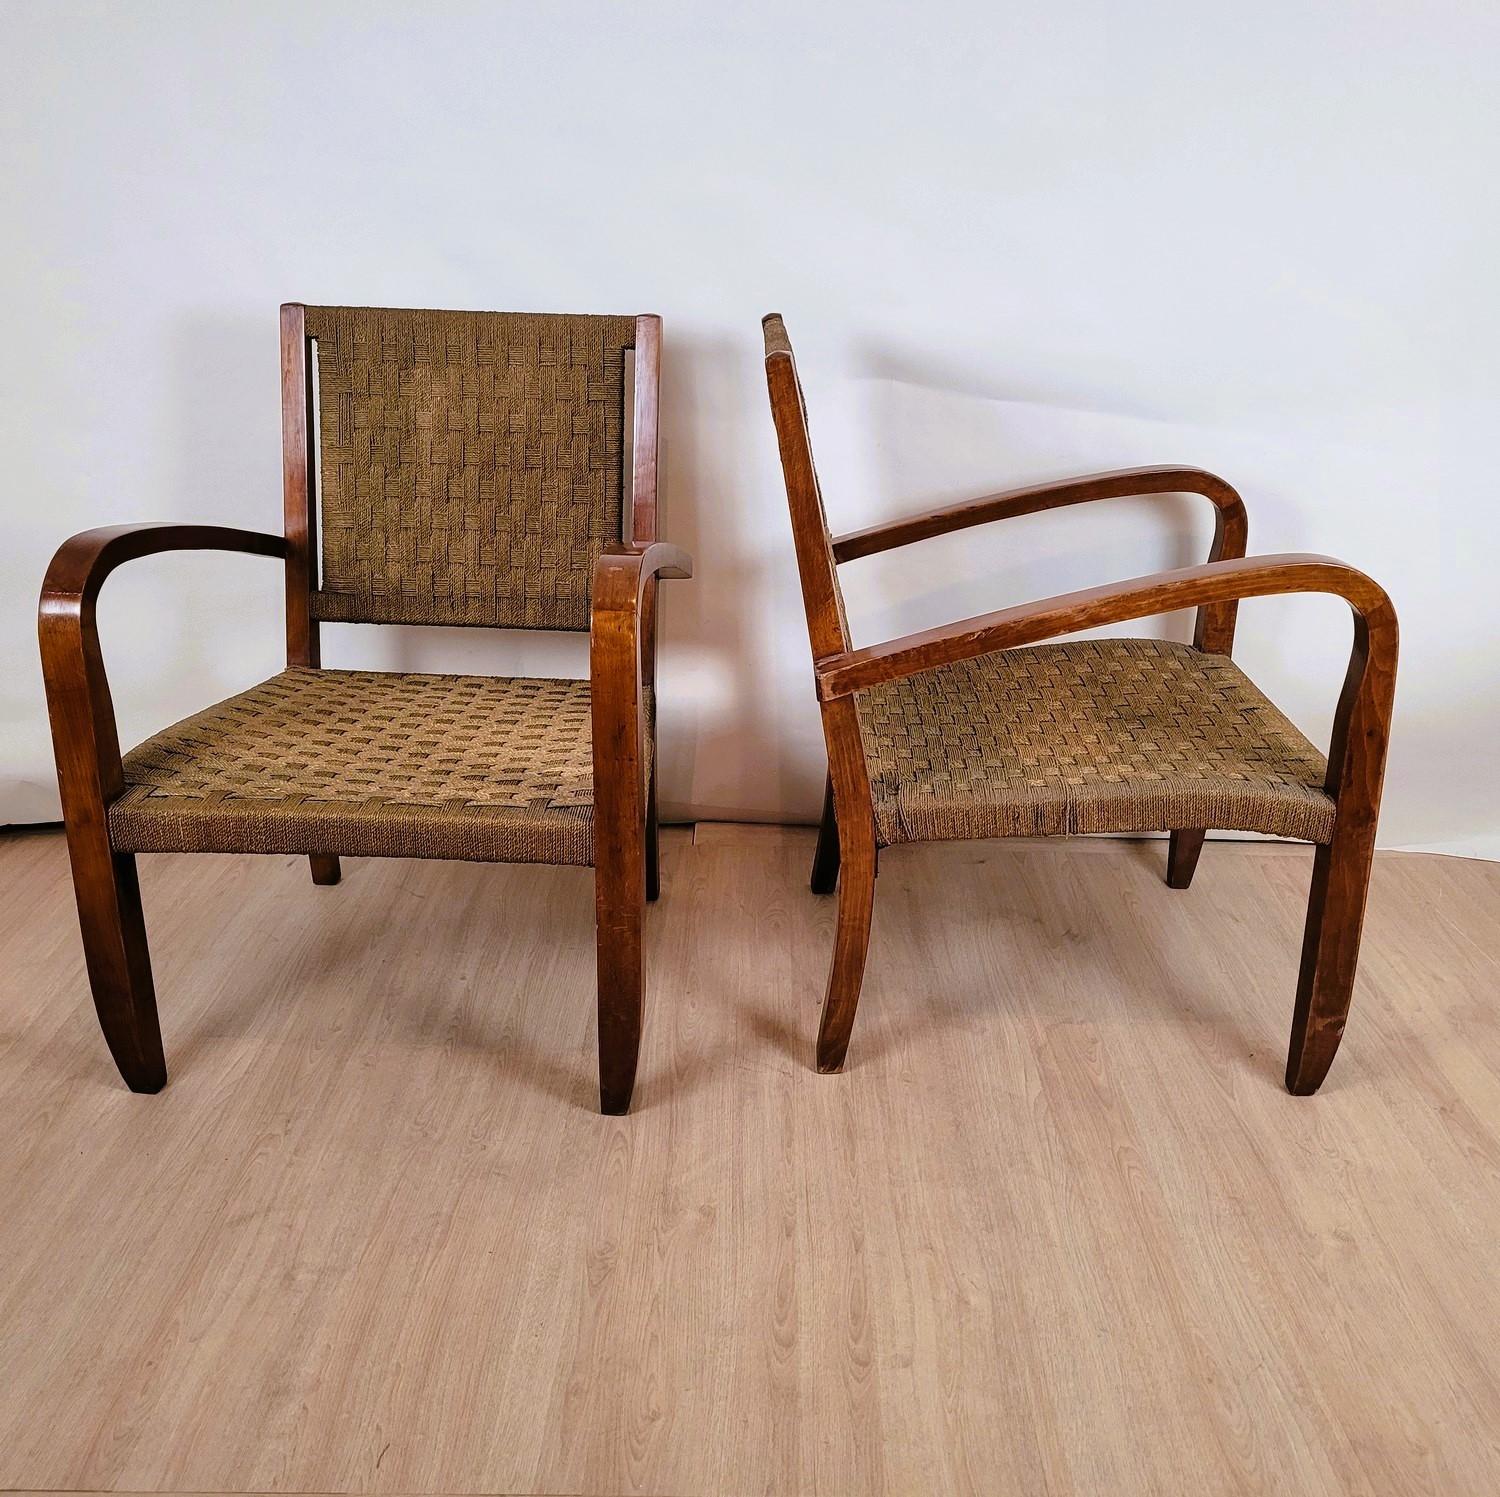 Paire de fauteuils en bois teinté avec assise et dossier en corde tressée

Fauteuils attribués à Erick Dieckmann, designer du Bauhaus
Vers 1930

Usure, certaines cordes à revoir

Hauteur 85cm assise 40cm
62.5 x 61 cm